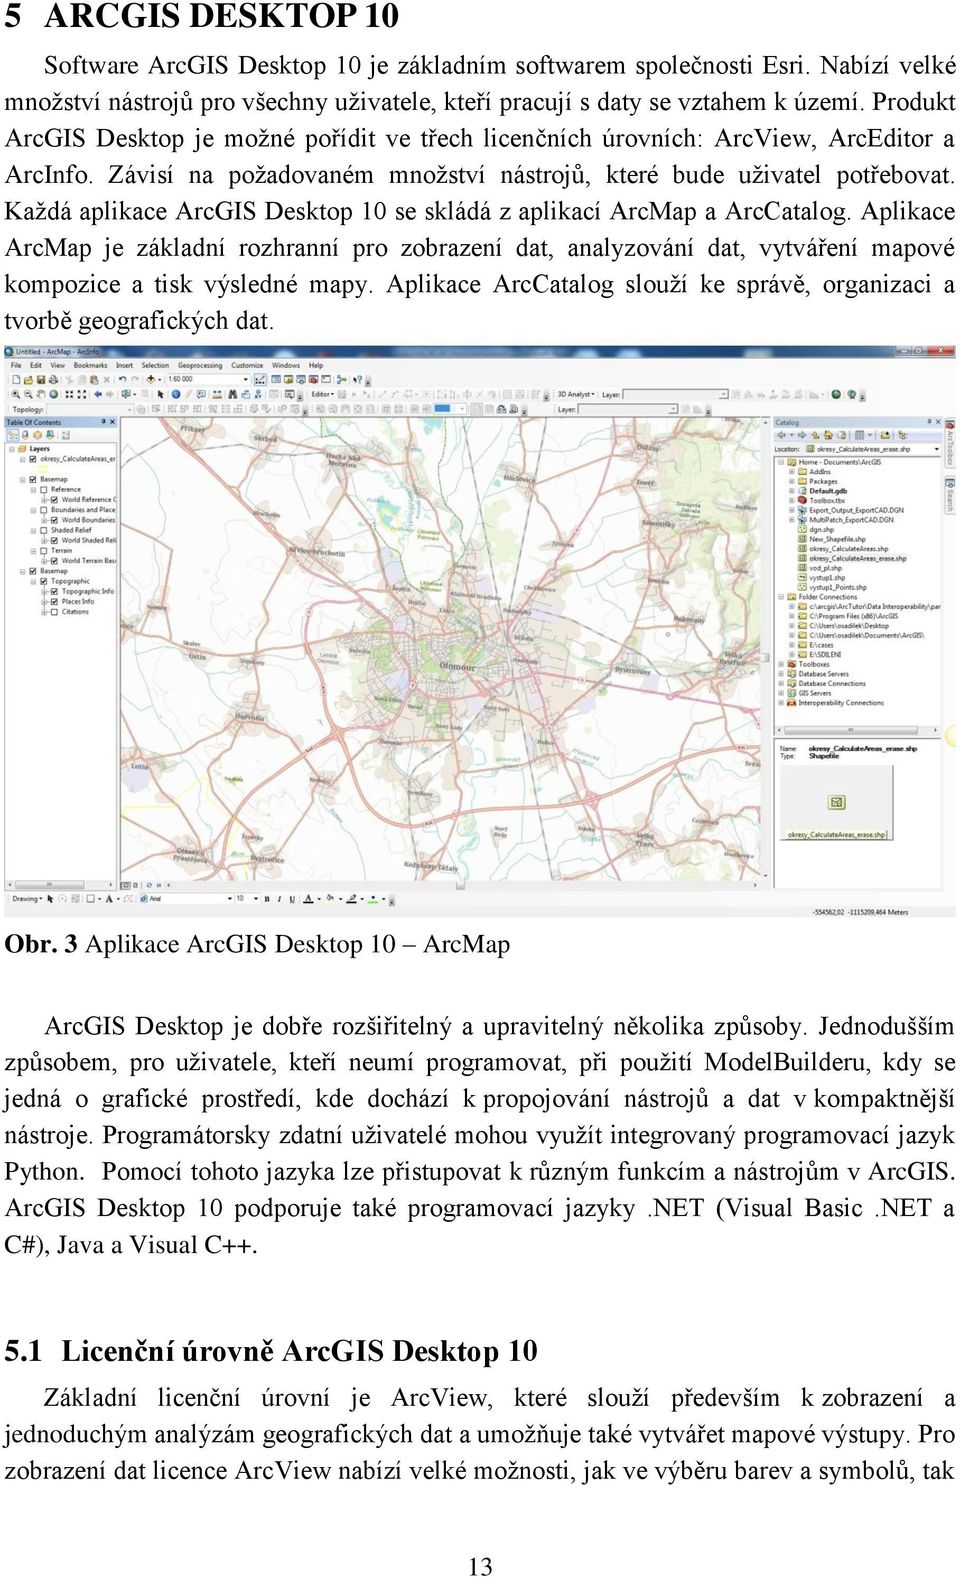 Každá aplikace ArcGIS Desktop 10 se skládá z aplikací ArcMap a ArcCatalog. Aplikace ArcMap je základní rozhranní pro zobrazení dat, analyzování dat, vytváření mapové kompozice a tisk výsledné mapy.